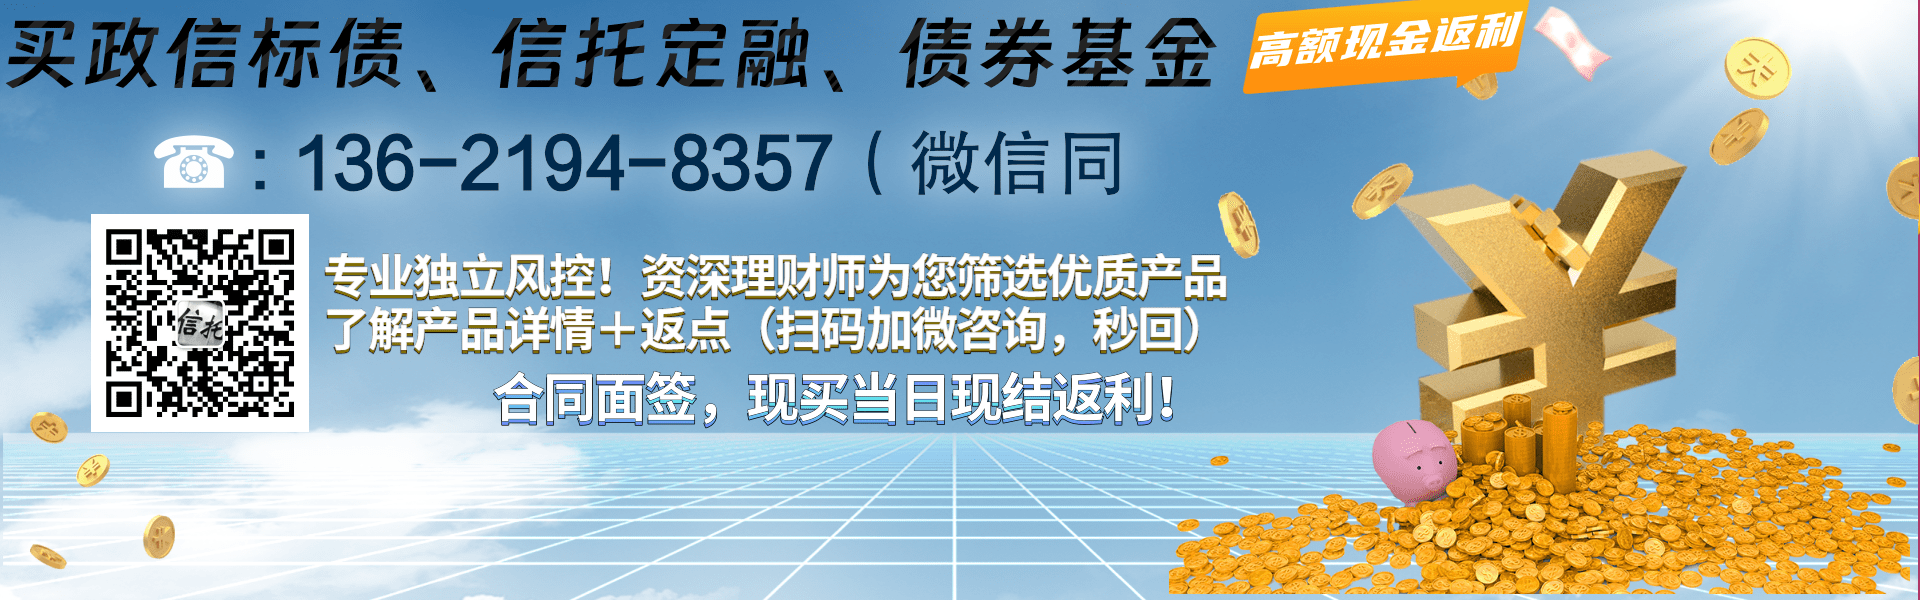 2023重庆FJ城投应收债权产品项目